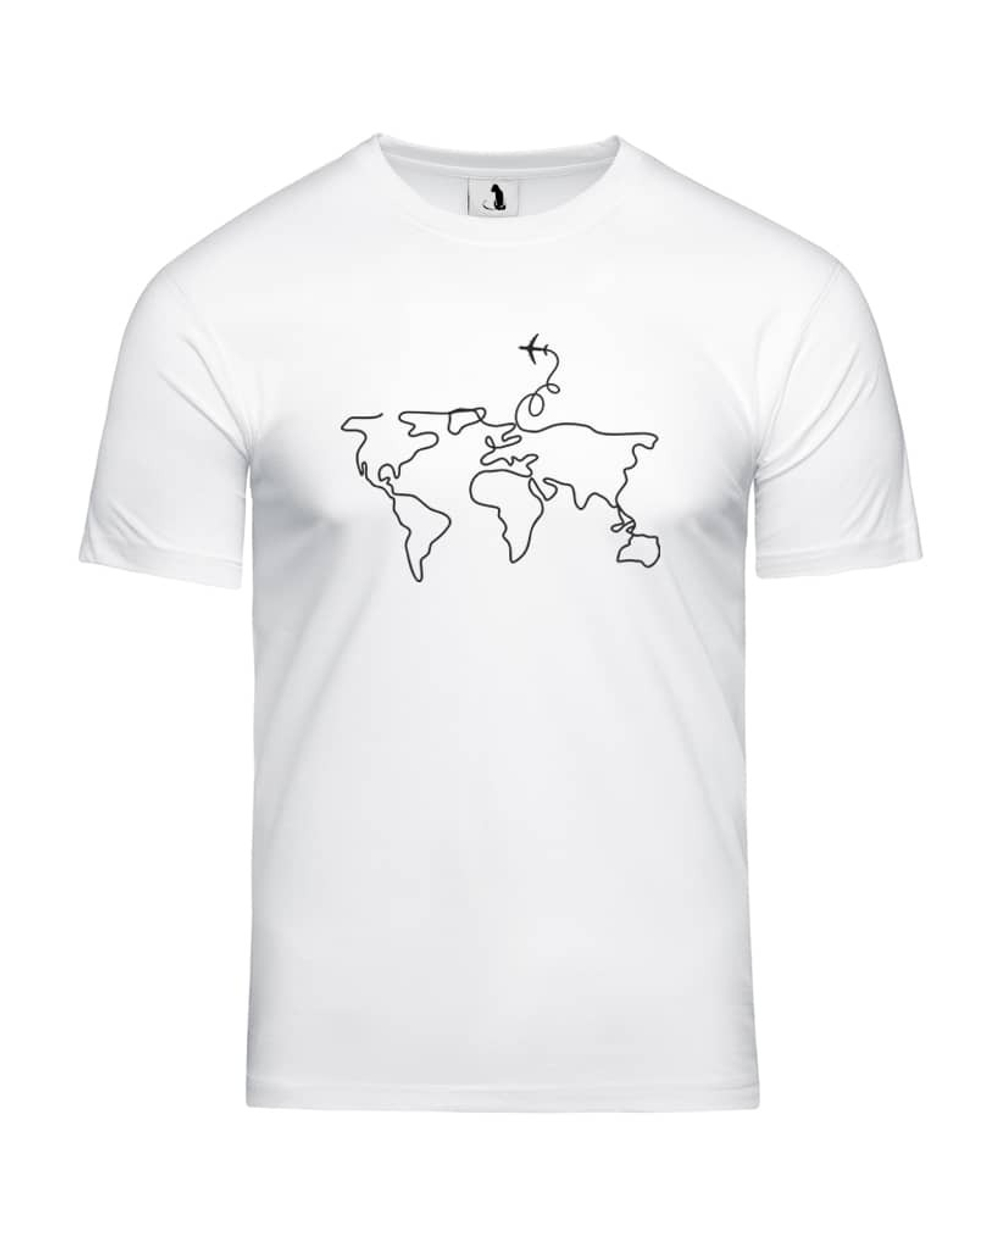 Футболка с самолетом Карта мира мужская белая